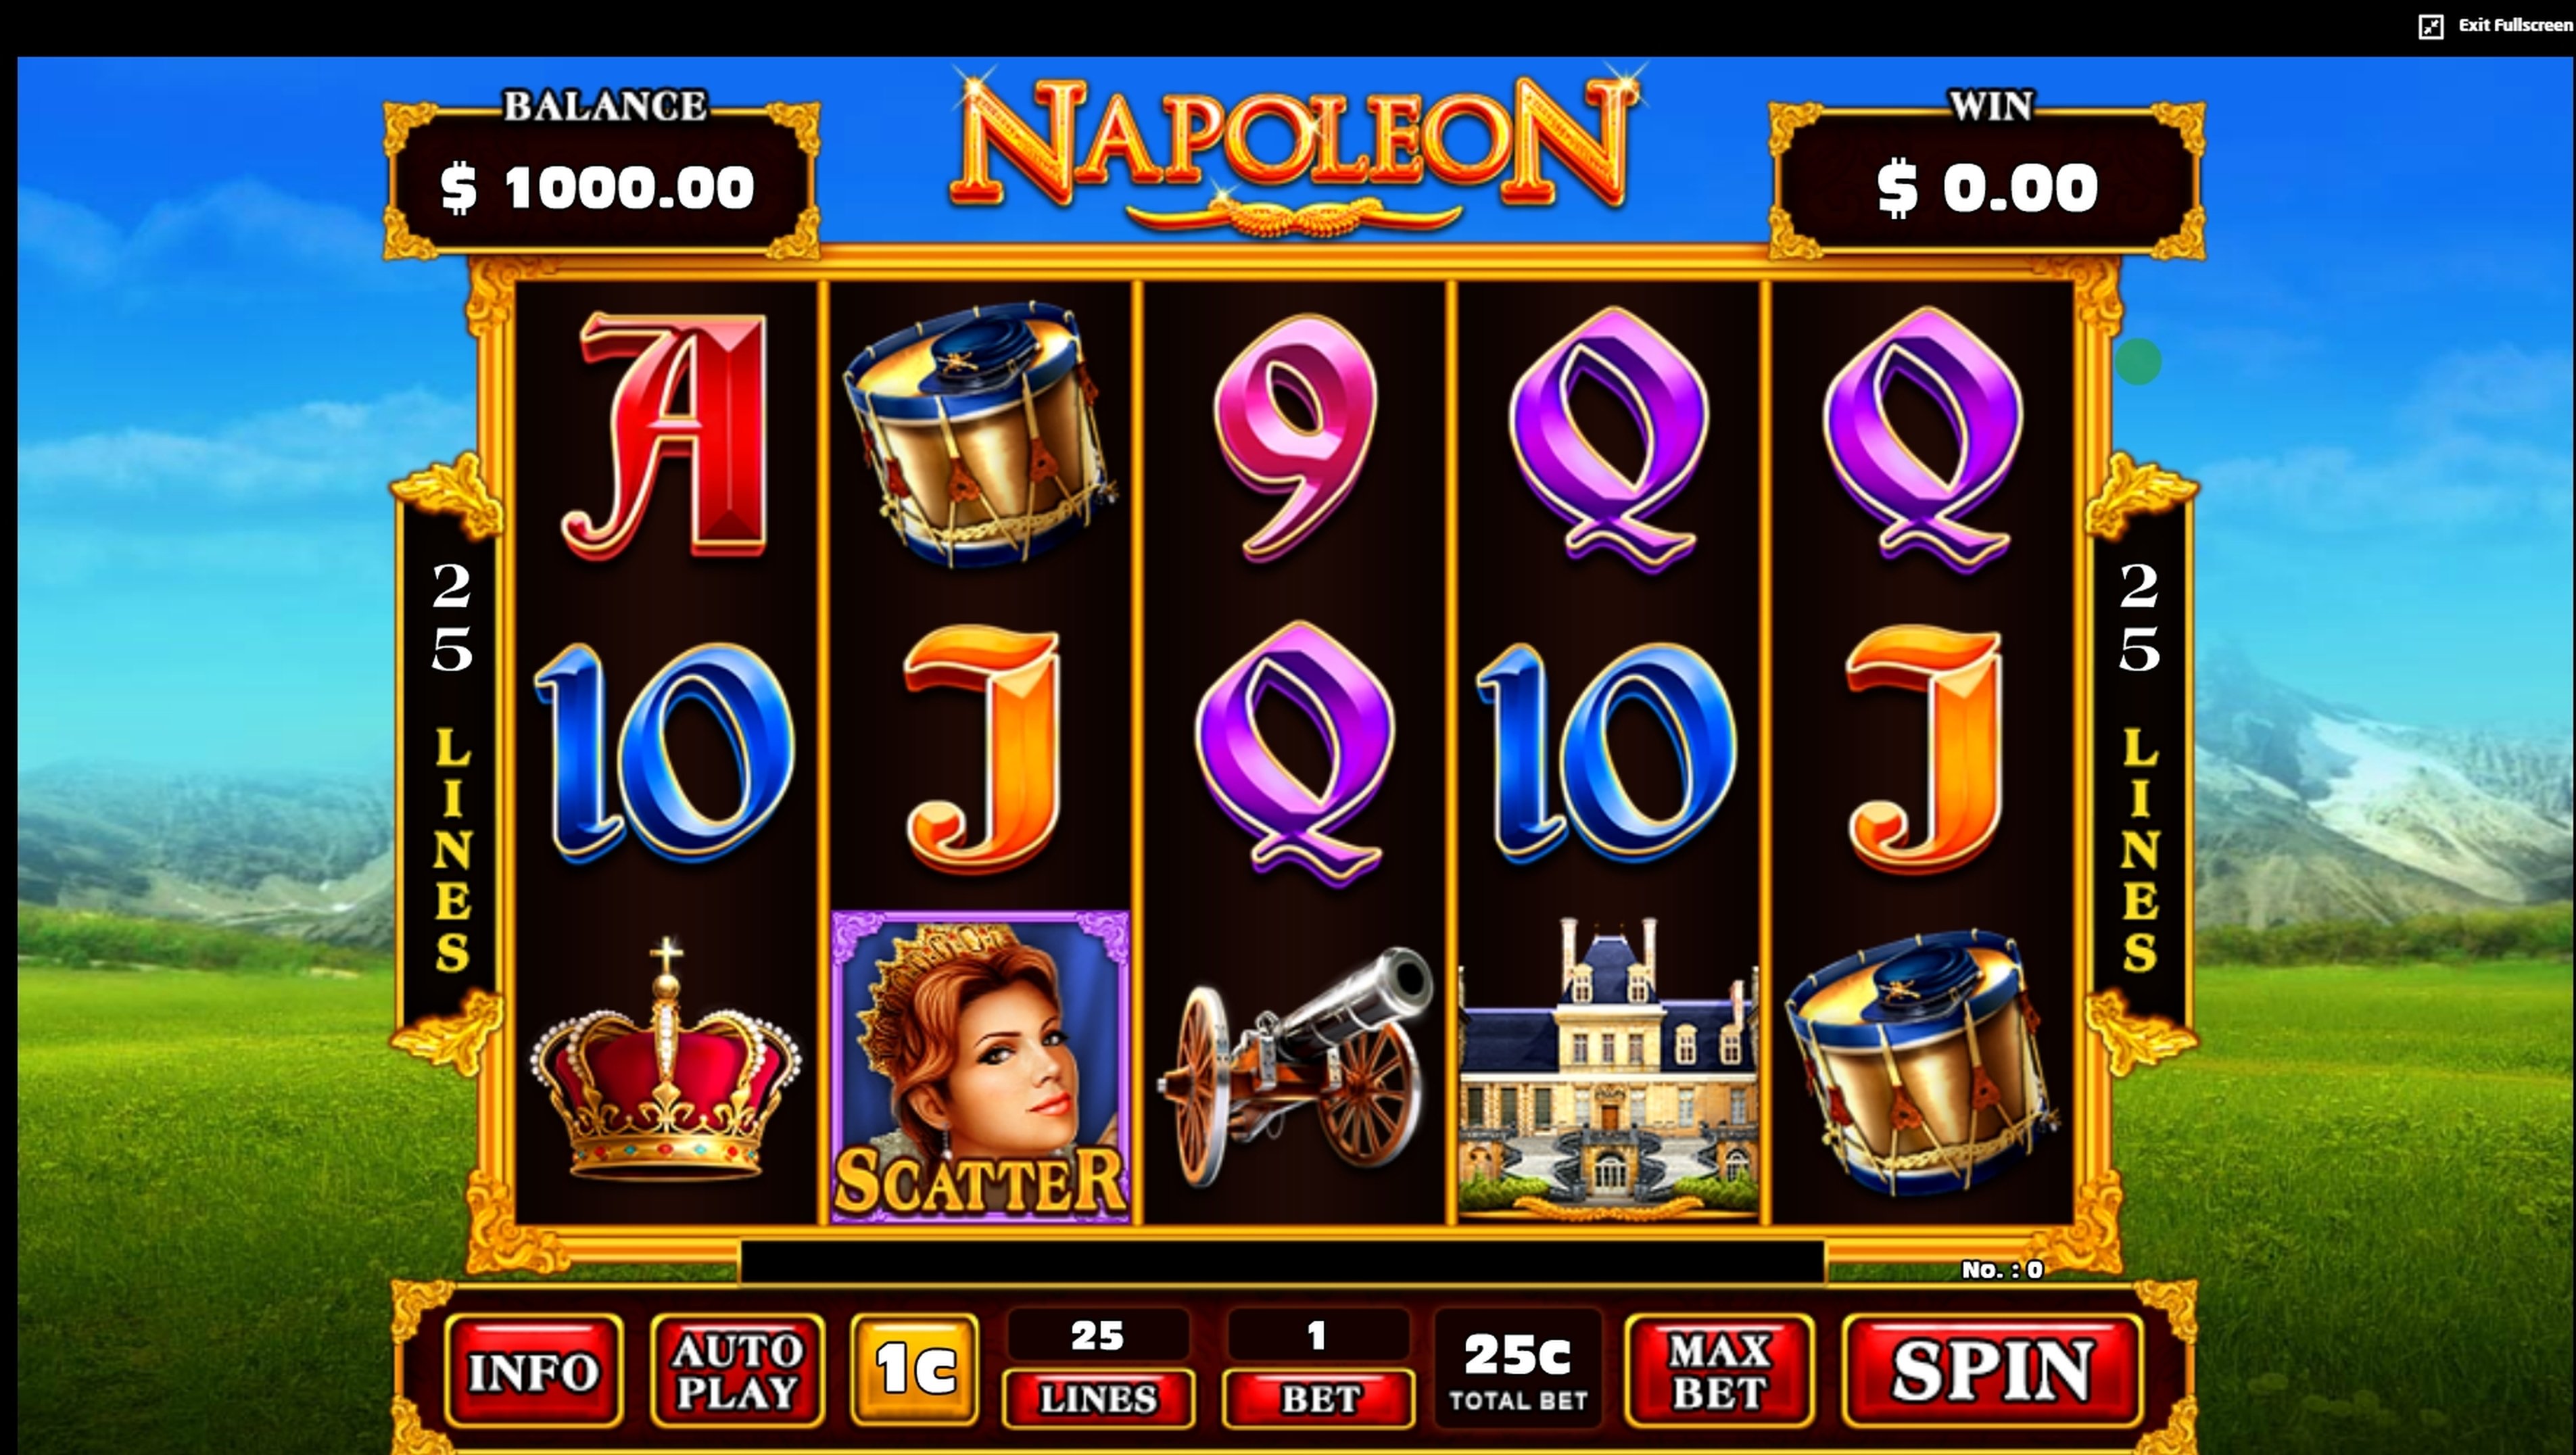 Napoleon (JDB168) demo play, Slot Machine Online by JDB168 Review | CasinosAnalyzer.com